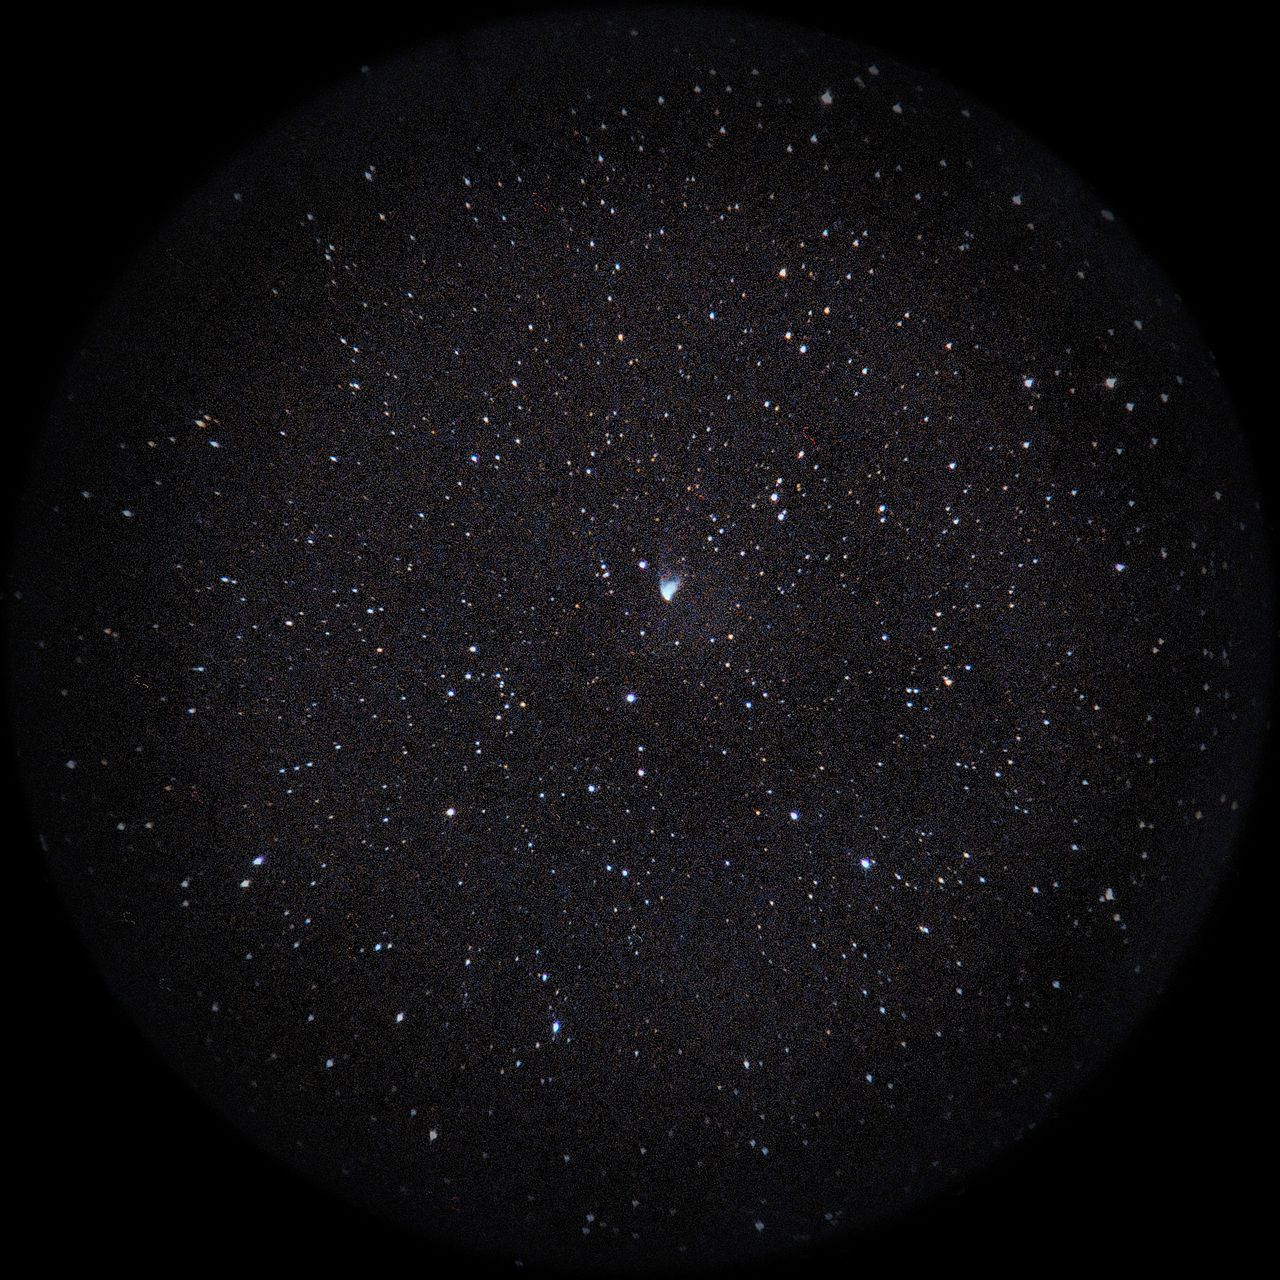 Image of NGC2261